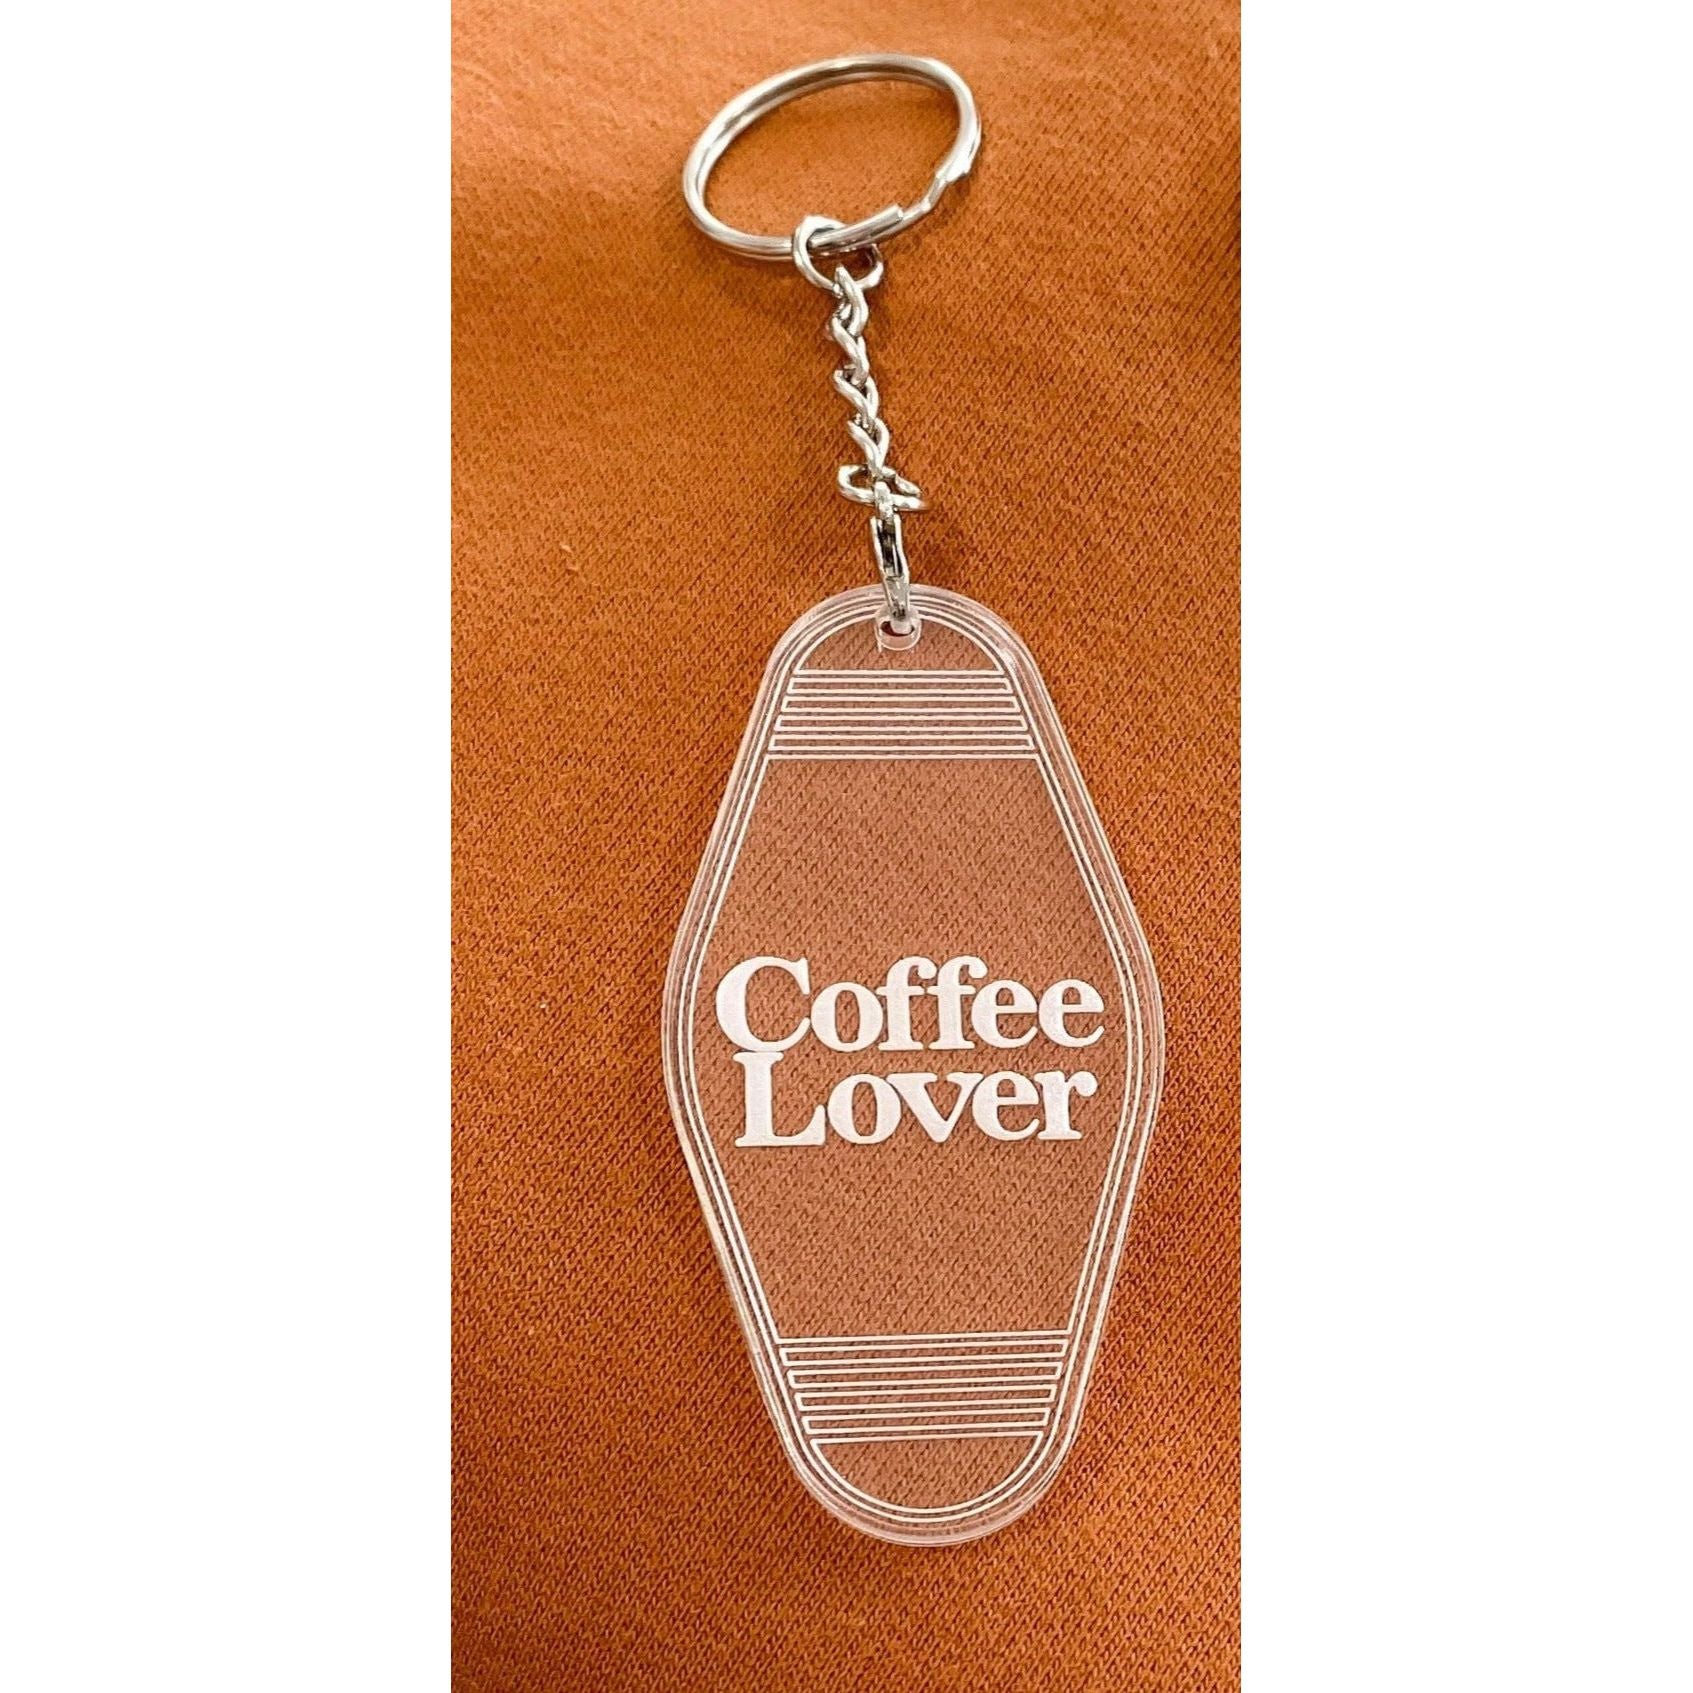 Blonde Ambition Coffee Lover Keychain